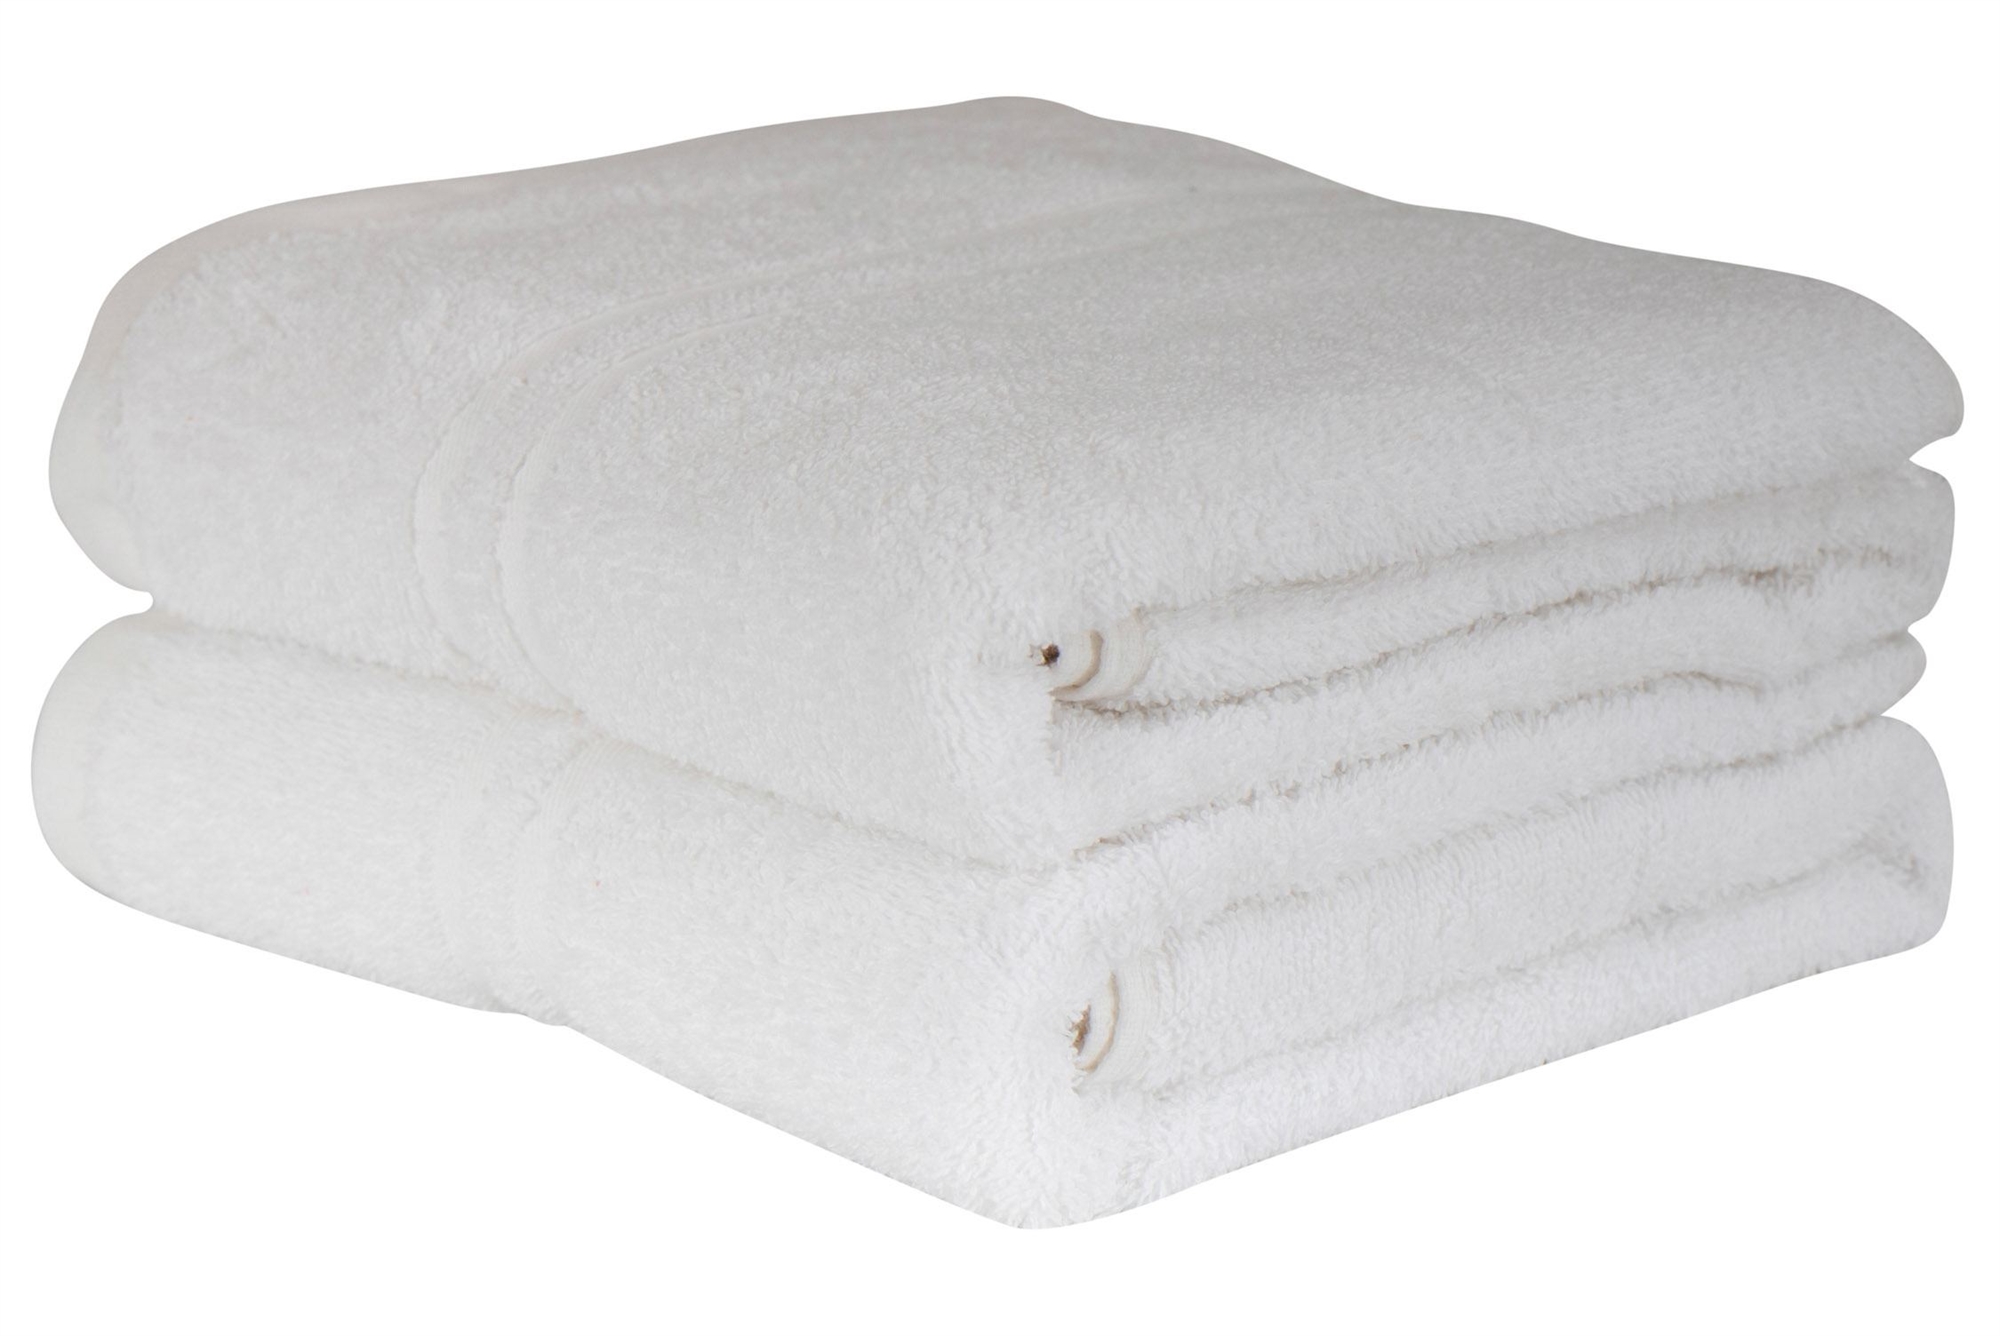 glide fred Mekaniker Badehåndklæde • Hvid i 100% Bomuld • 65x130 cm